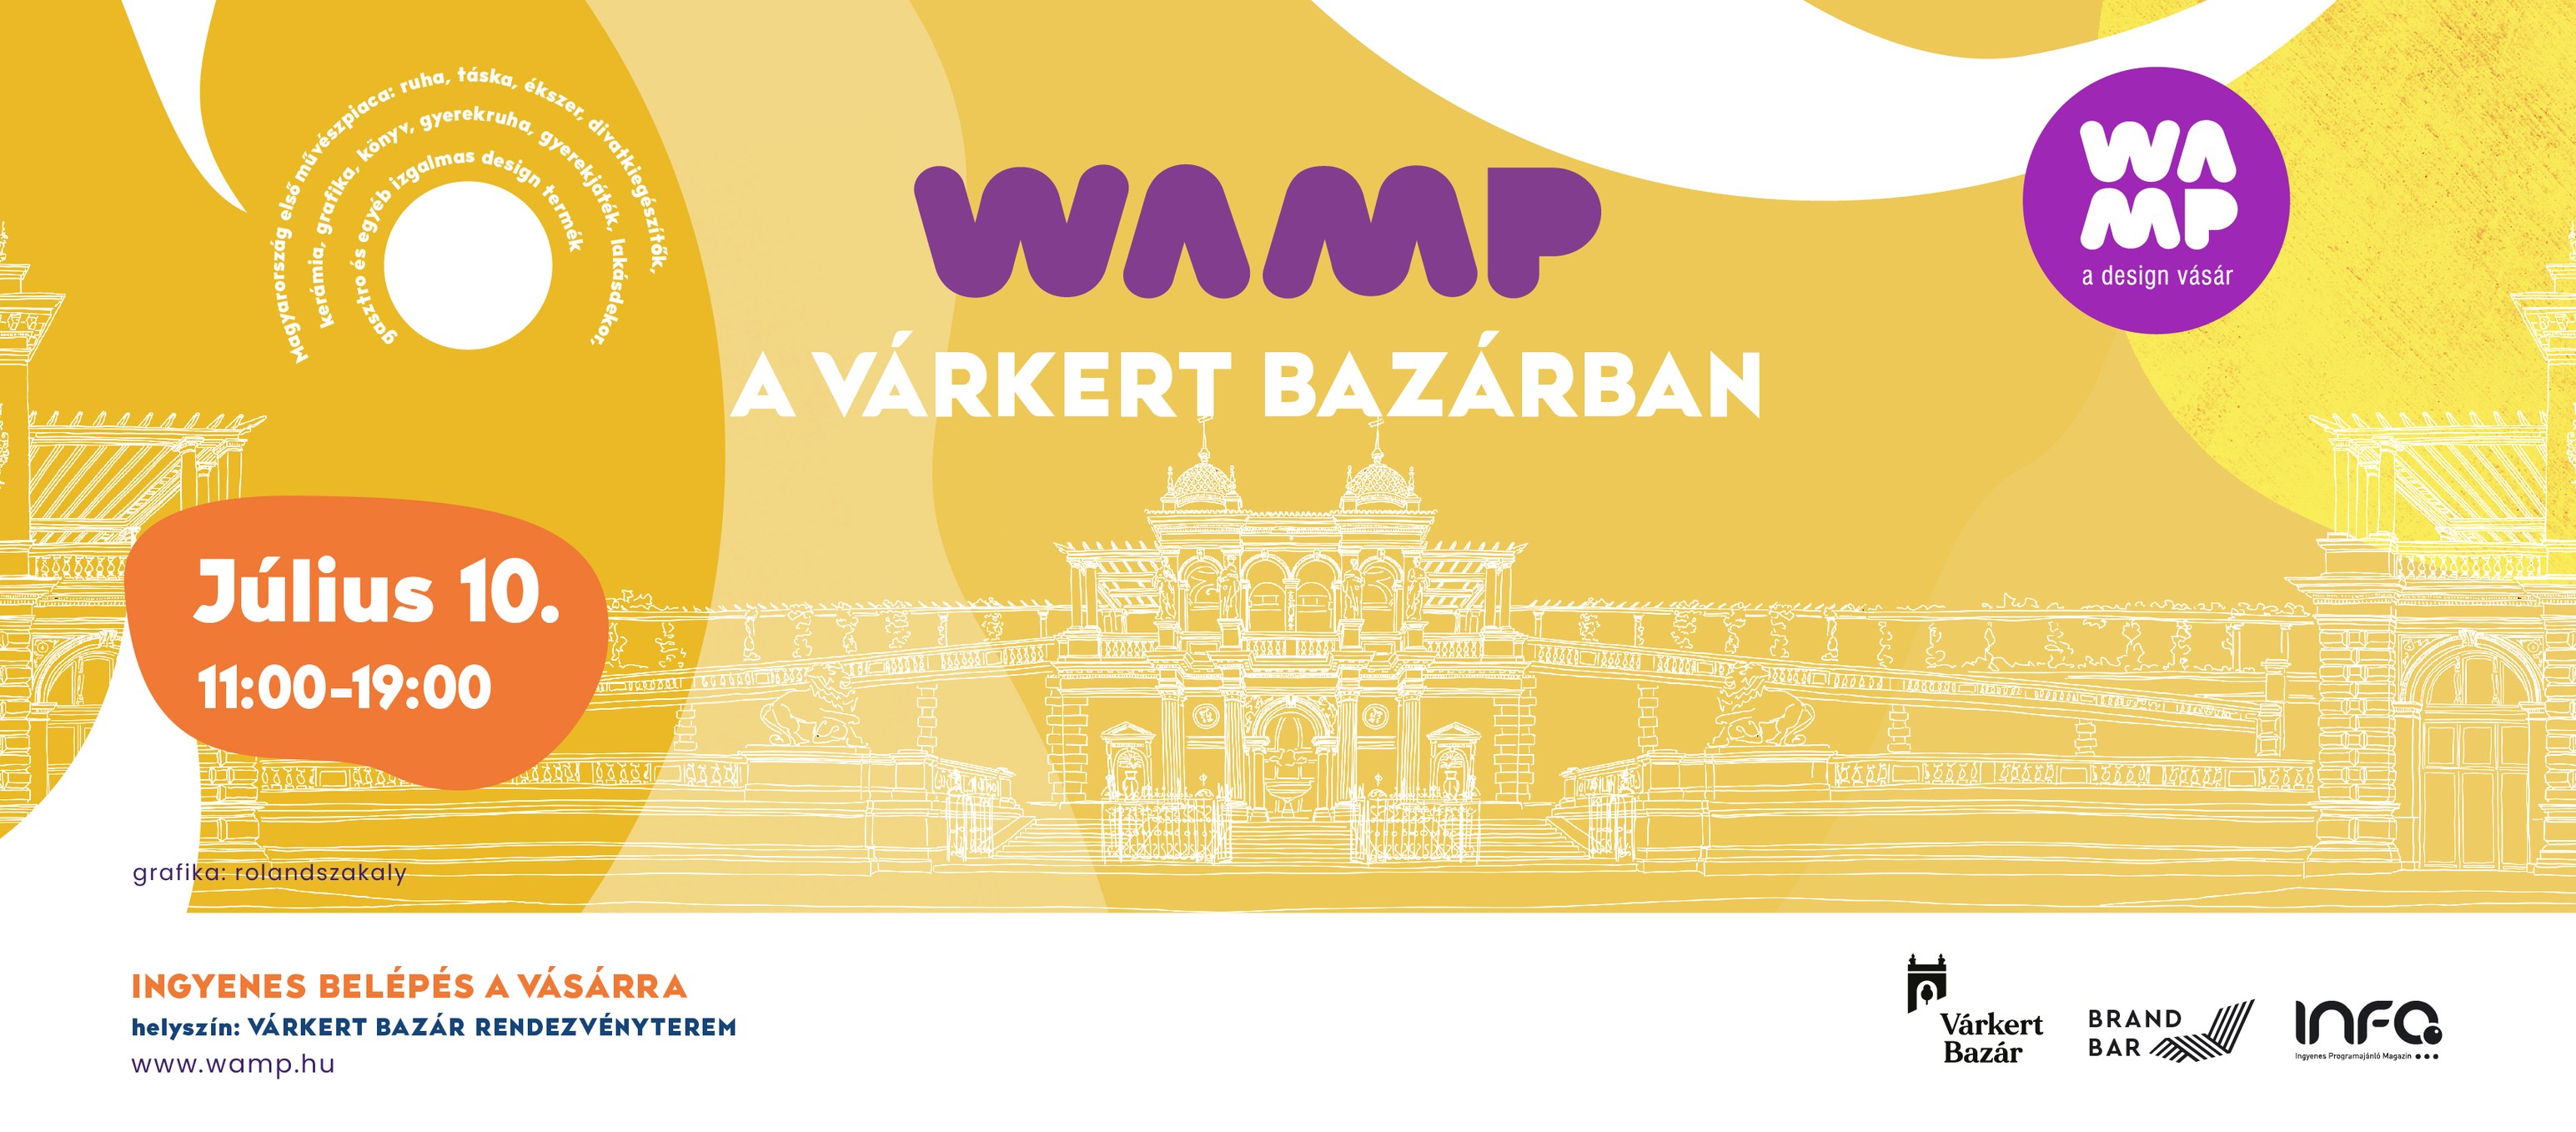 Wamp Design Market, Várkert Bazár Budapest, 10 July